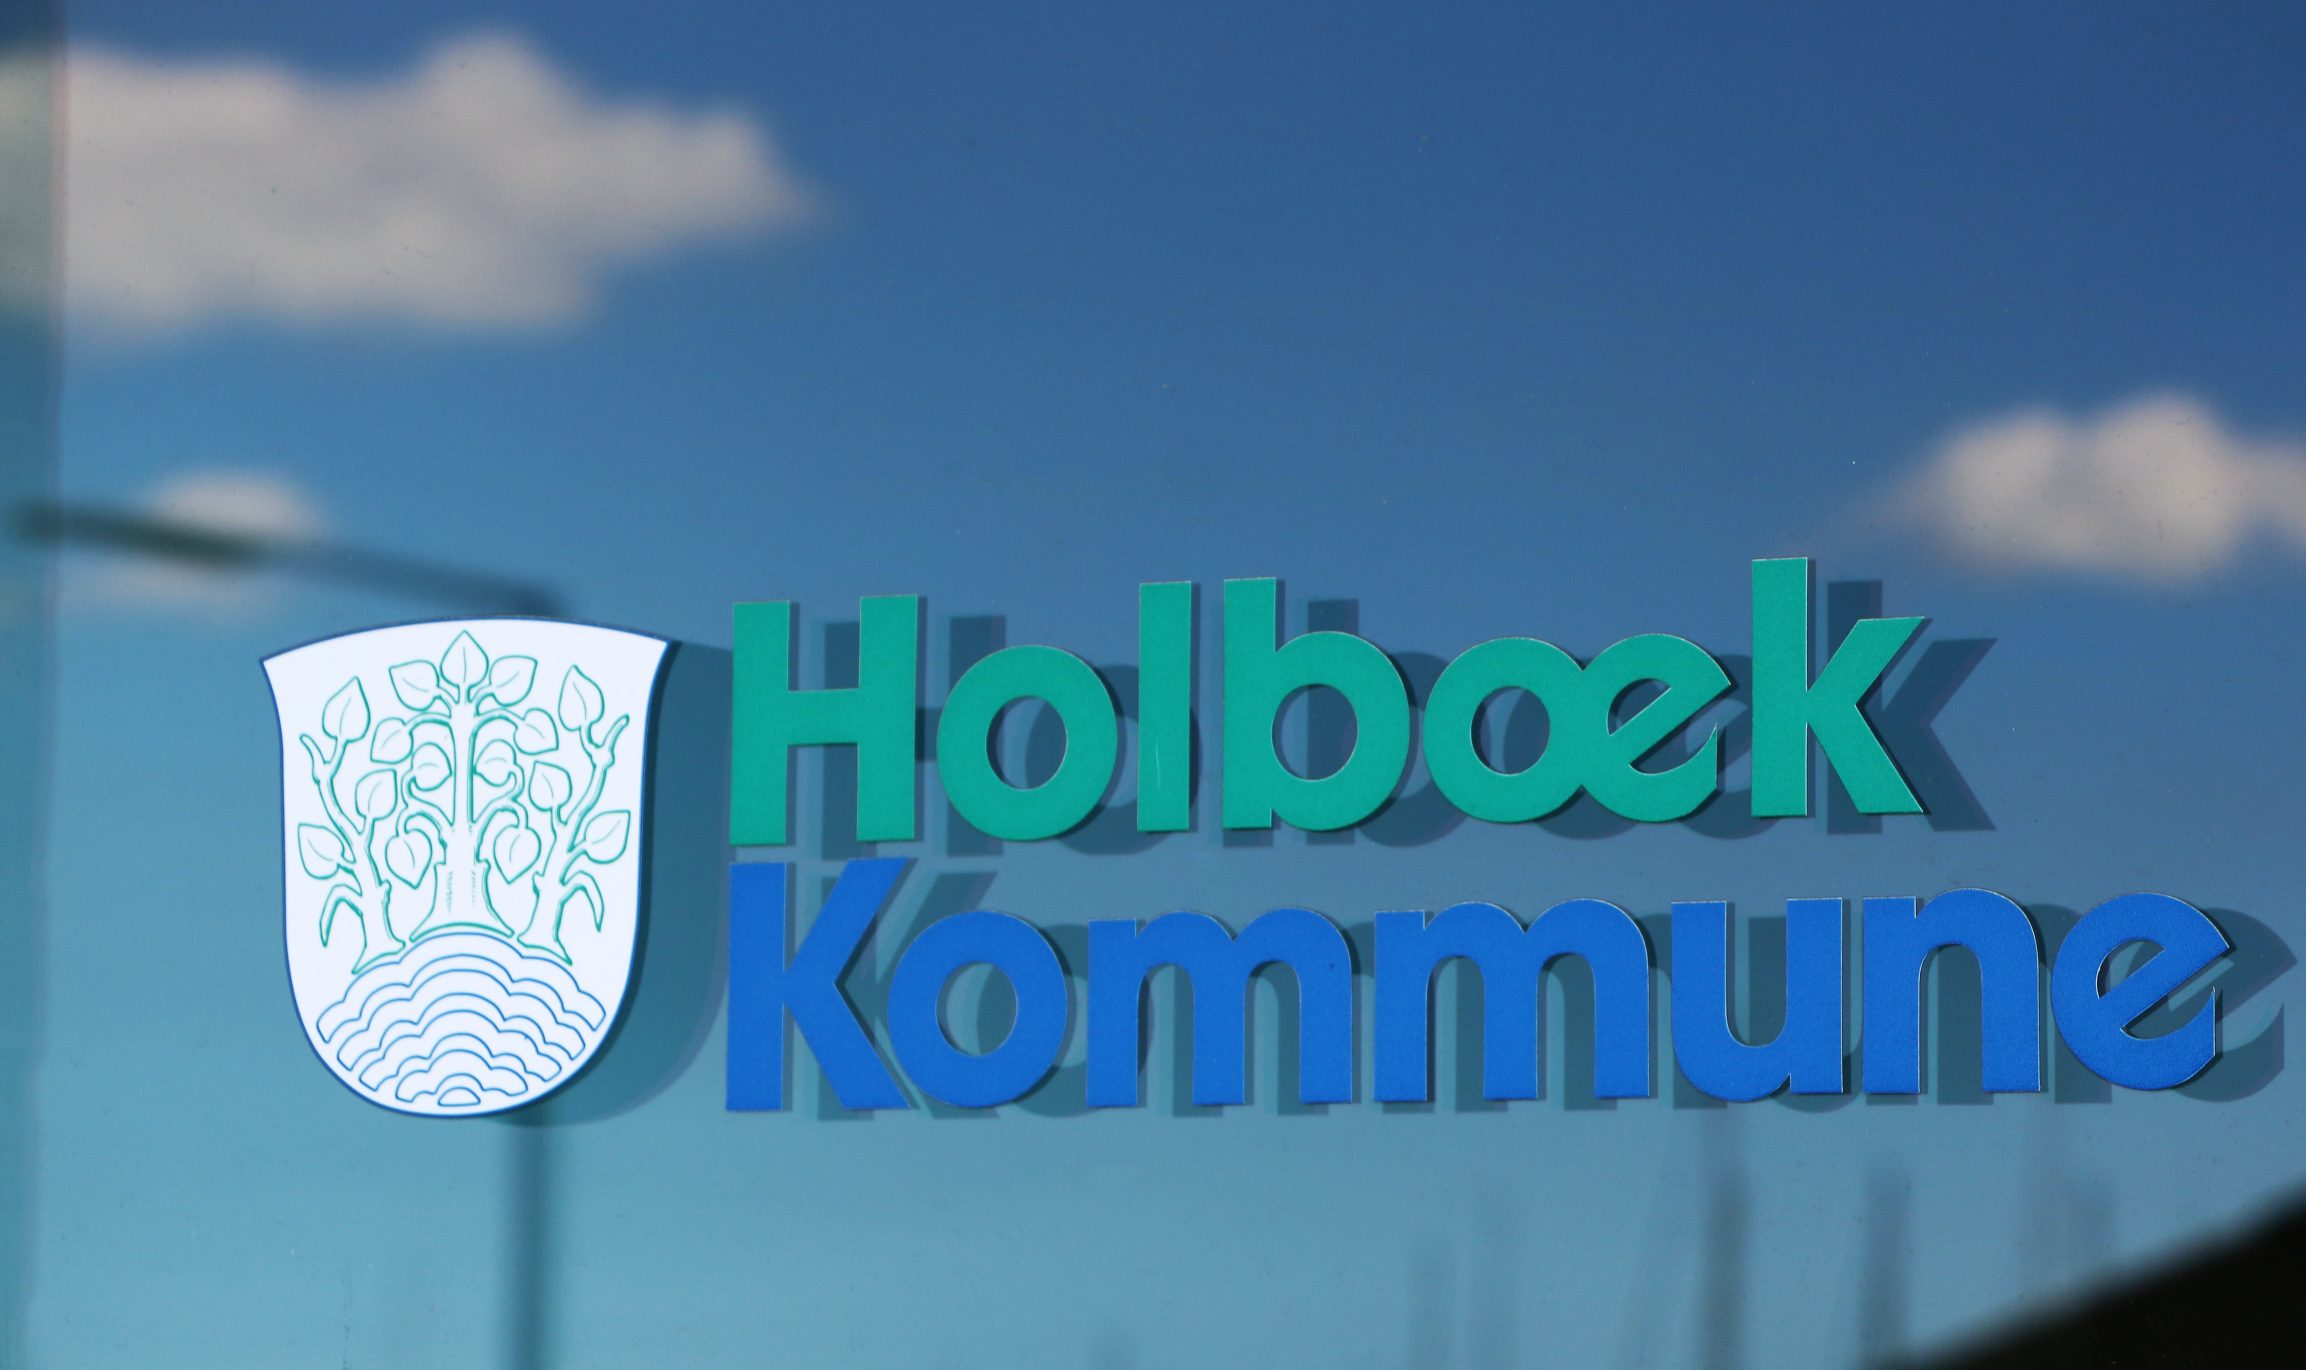 Den 7. juni går Holbæk Kommune live med nyt IT-ydelsessystem